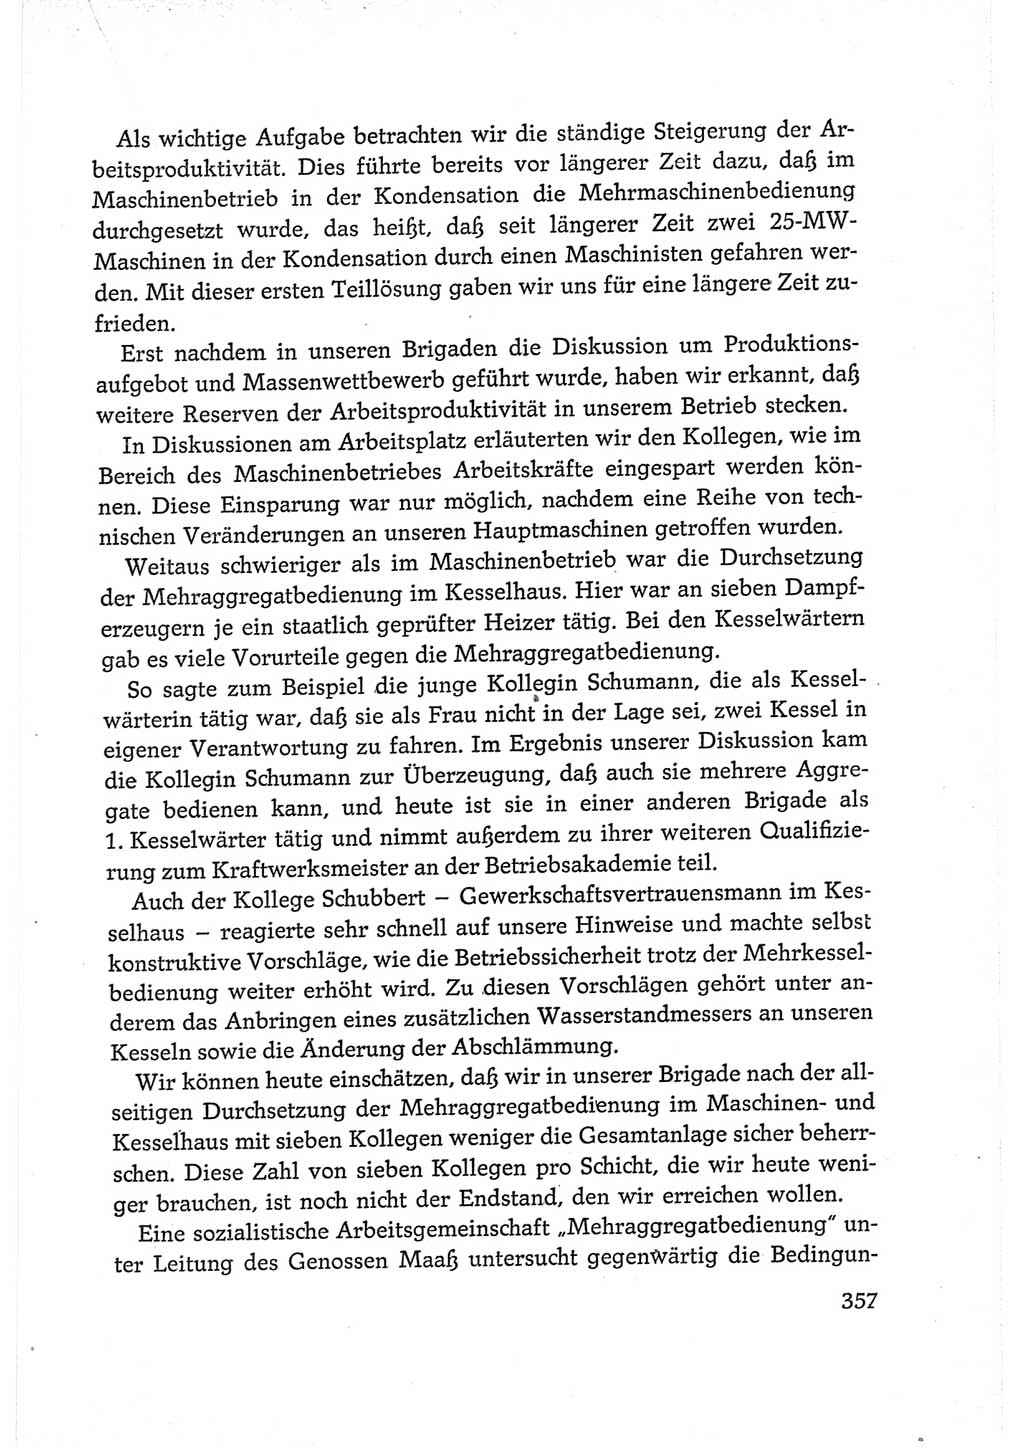 Protokoll der Verhandlungen des Ⅵ. Parteitages der Sozialistischen Einheitspartei Deutschlands (SED) [Deutsche Demokratische Republik (DDR)] 1963, Band Ⅲ, Seite 357 (Prot. Verh. Ⅵ. PT SED DDR 1963, Bd. Ⅲ, S. 357)